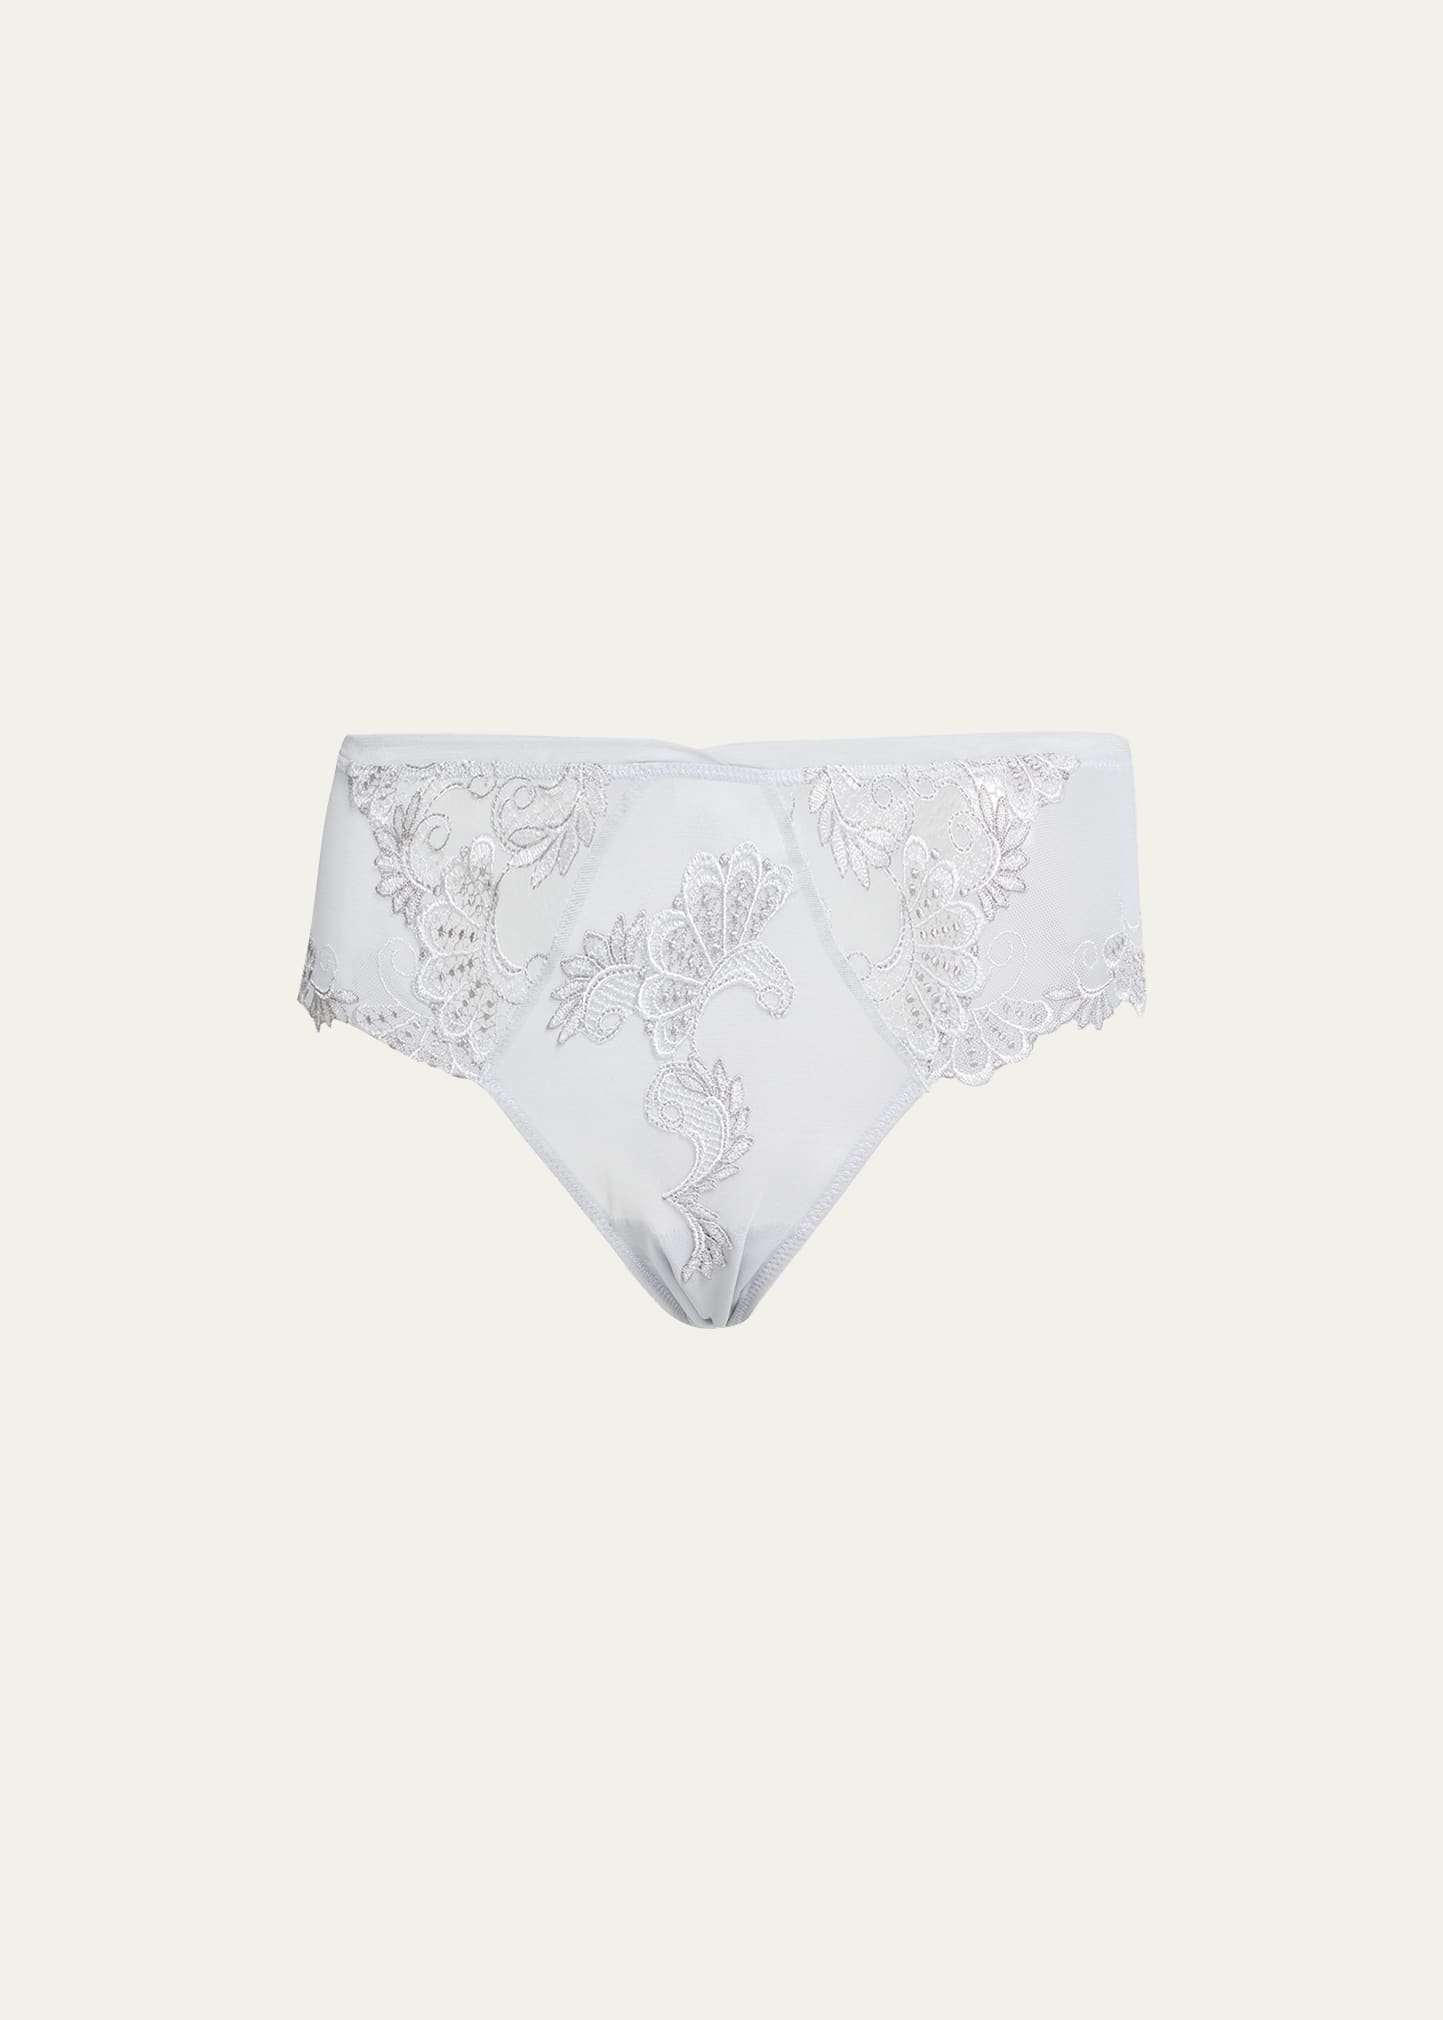 Women's Underwear at Bergdorf Goodman